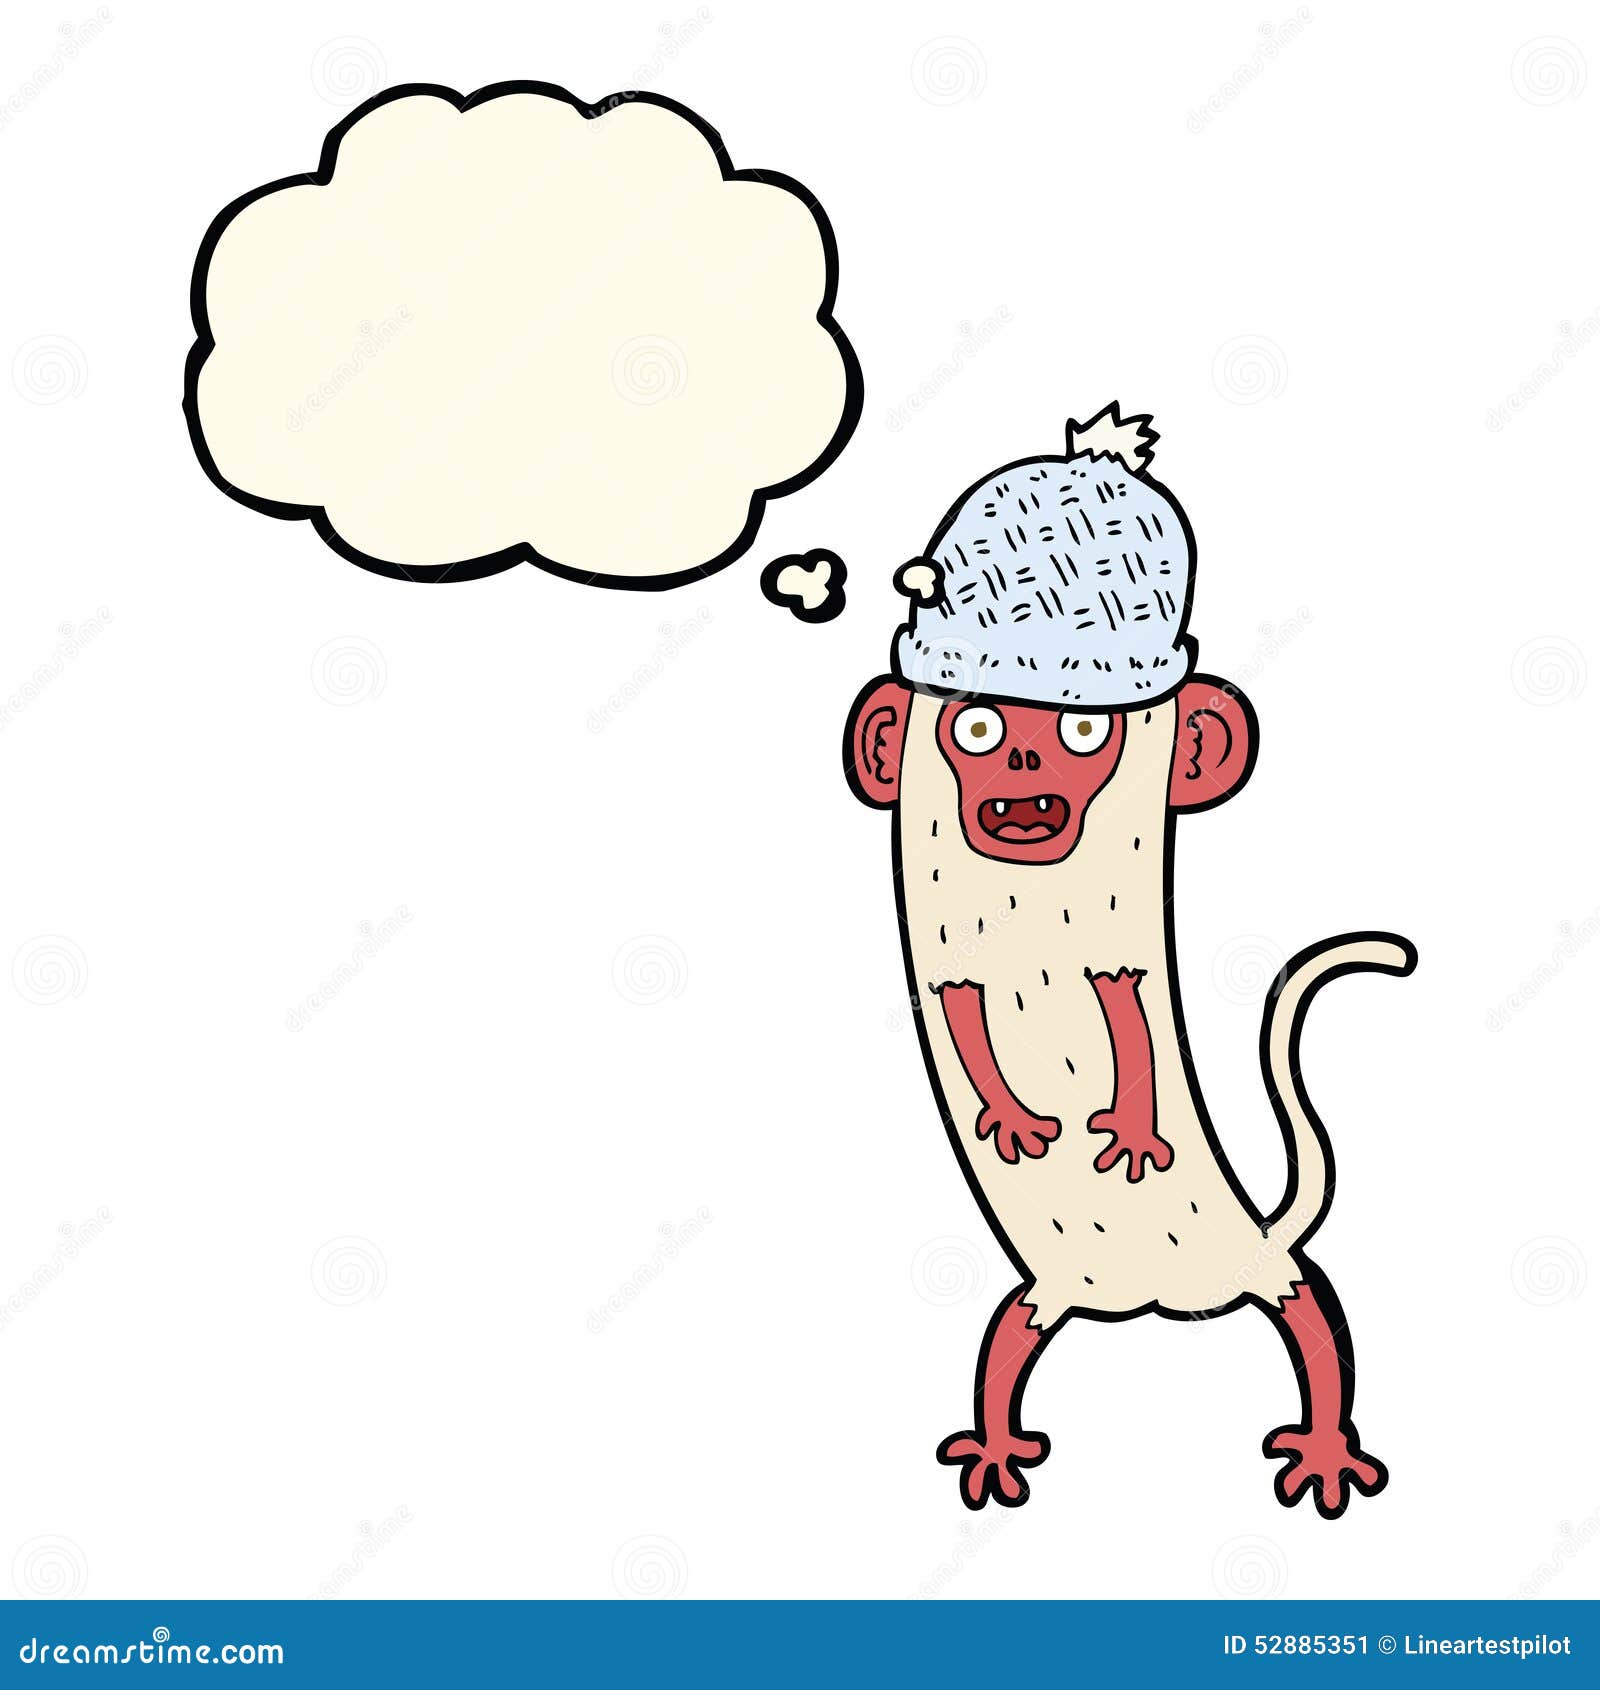 Primeiro Post! Macaco Louco. : r/desenhos